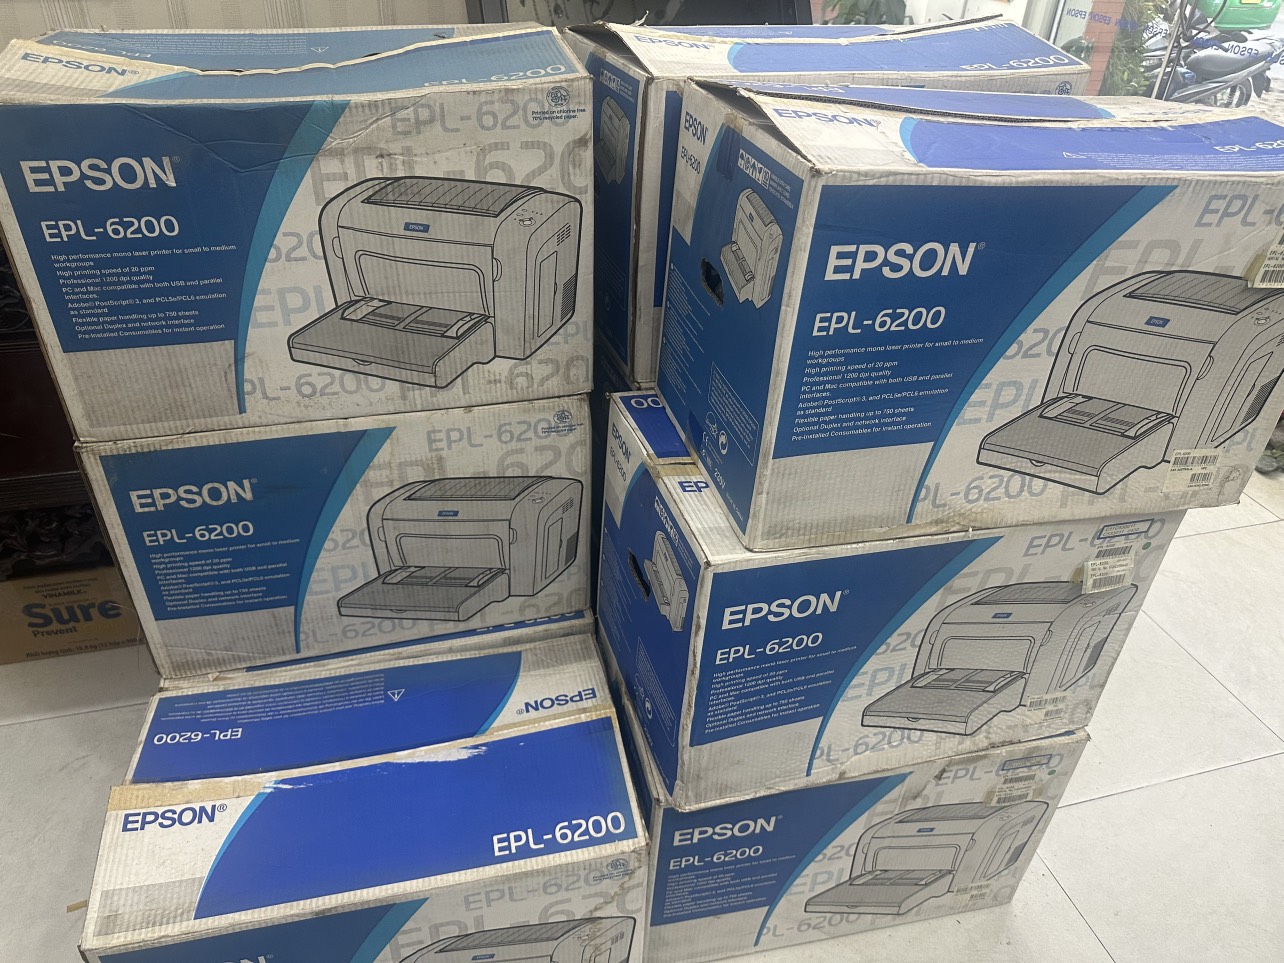 Thanh lý máy in Máy in Laser trắng đen Epson EPL 6200 mới 100% tồn kho